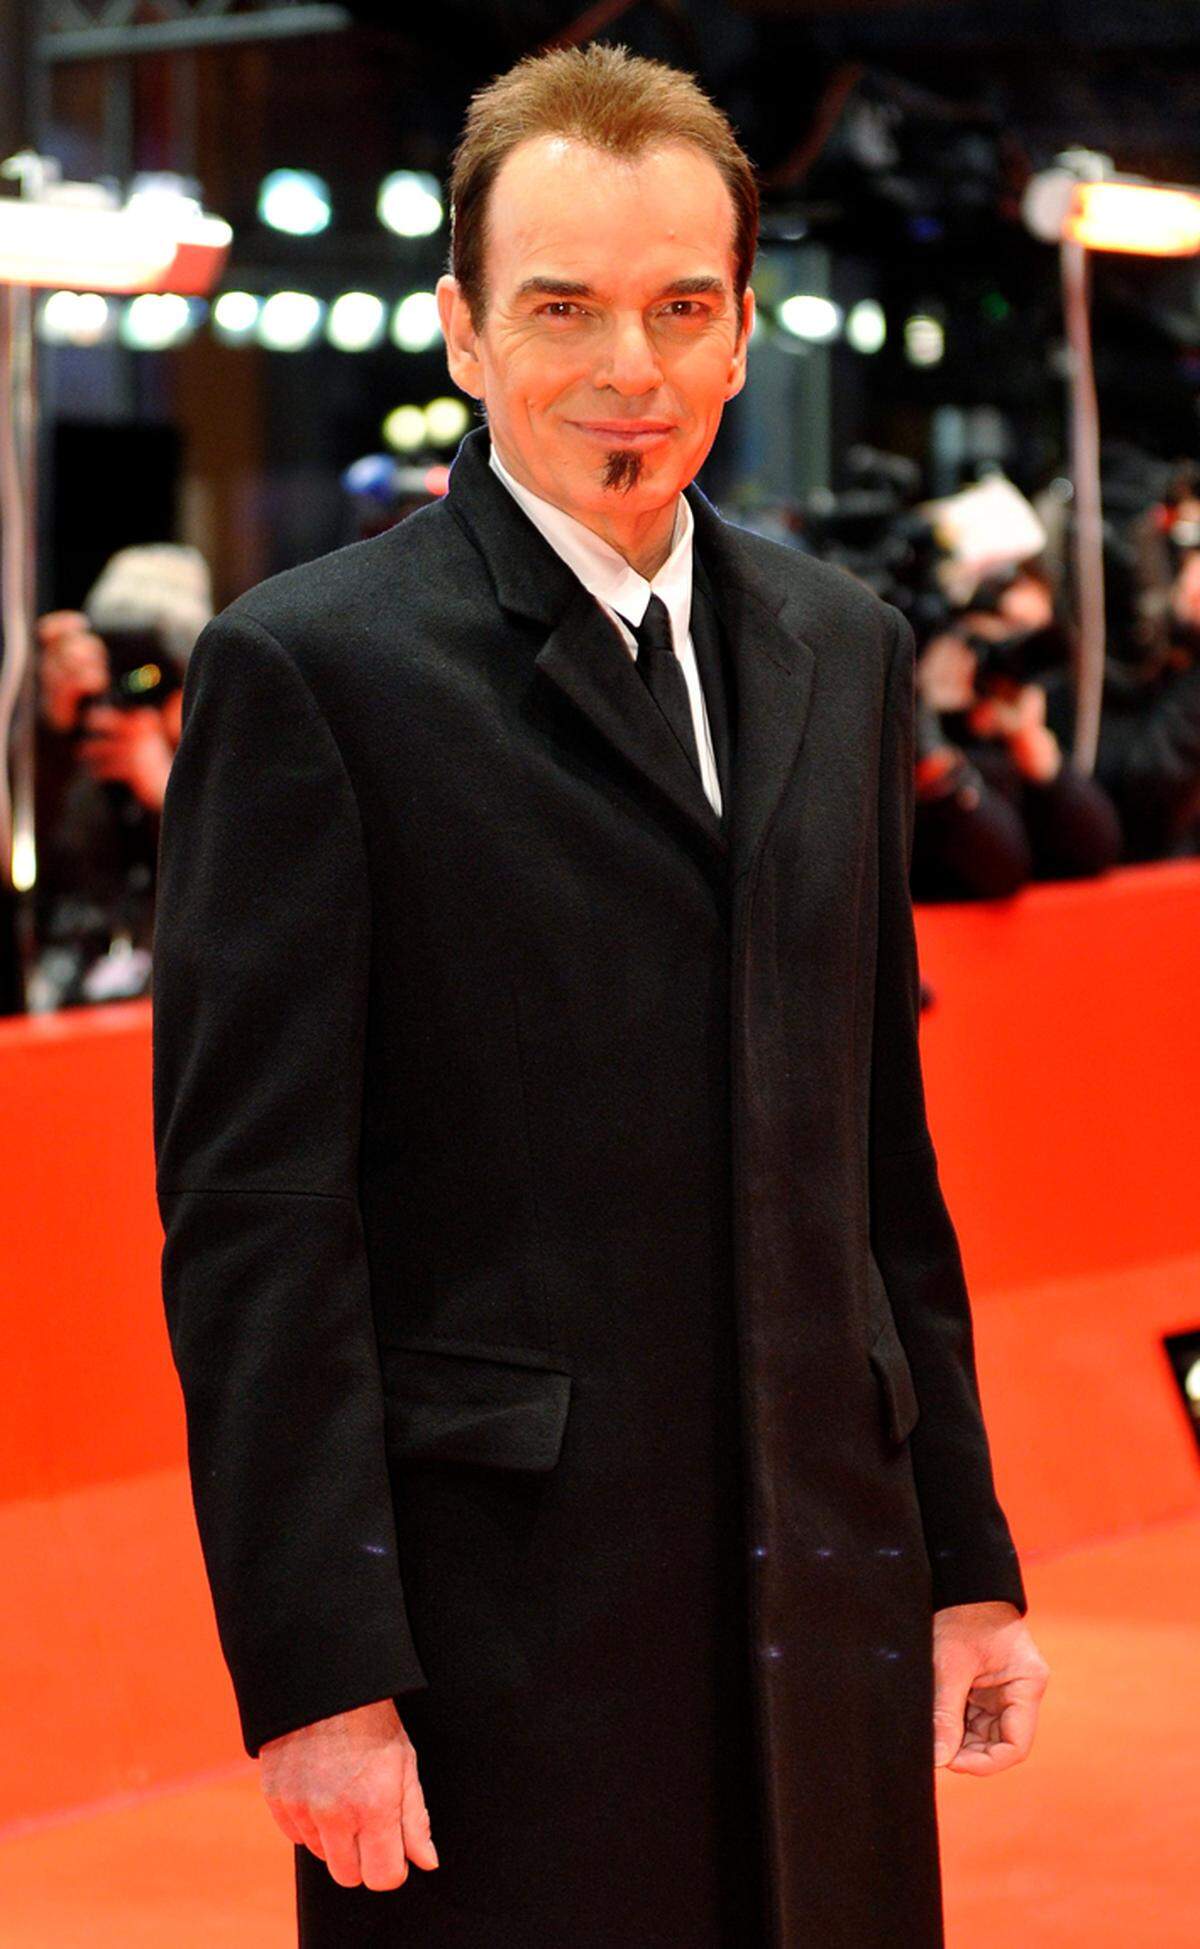 Mit dem Ex am Fest. US-Regisseur Billy Bob Thornton hat sich am Rande der Berlinale voll des Lobes über seine Ex-Frau Angelina Jolie gezeigt. Er werde sie, von der er im Mai 2003 geschieden wurde, "bis zum Ende meines Lebens lieben", sagte der 56-Jährige in Berlin.